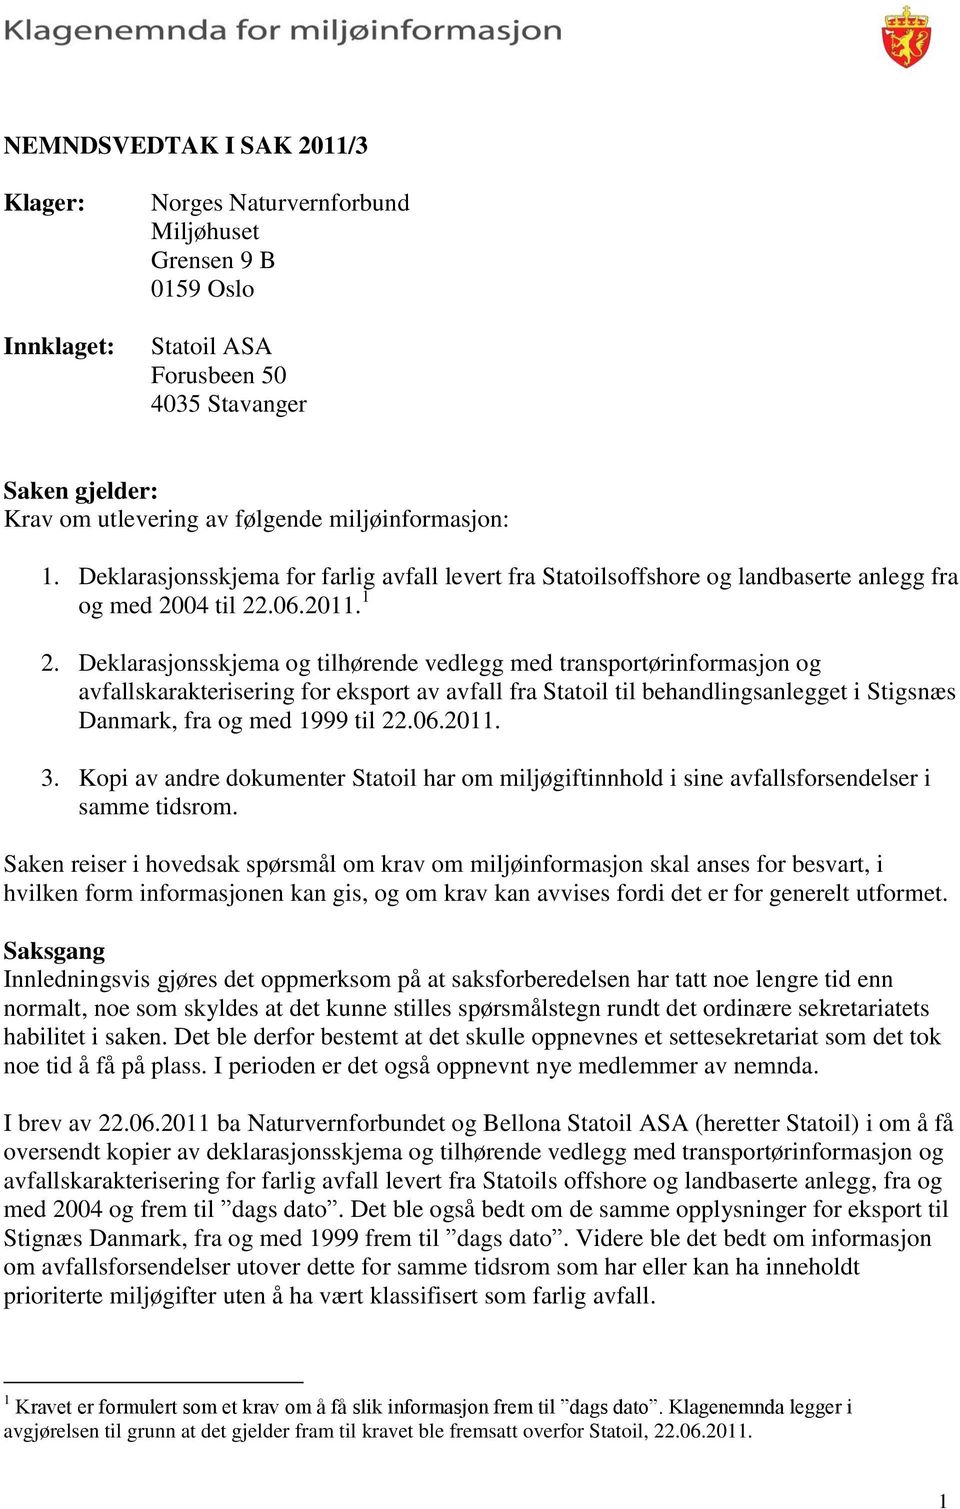 Deklarasjonsskjema og tilhørende vedlegg med transportørinformasjon og avfallskarakterisering for eksport av avfall fra Statoil til behandlingsanlegget i Stigsnæs Danmark, fra og med 1999 til 22.06.